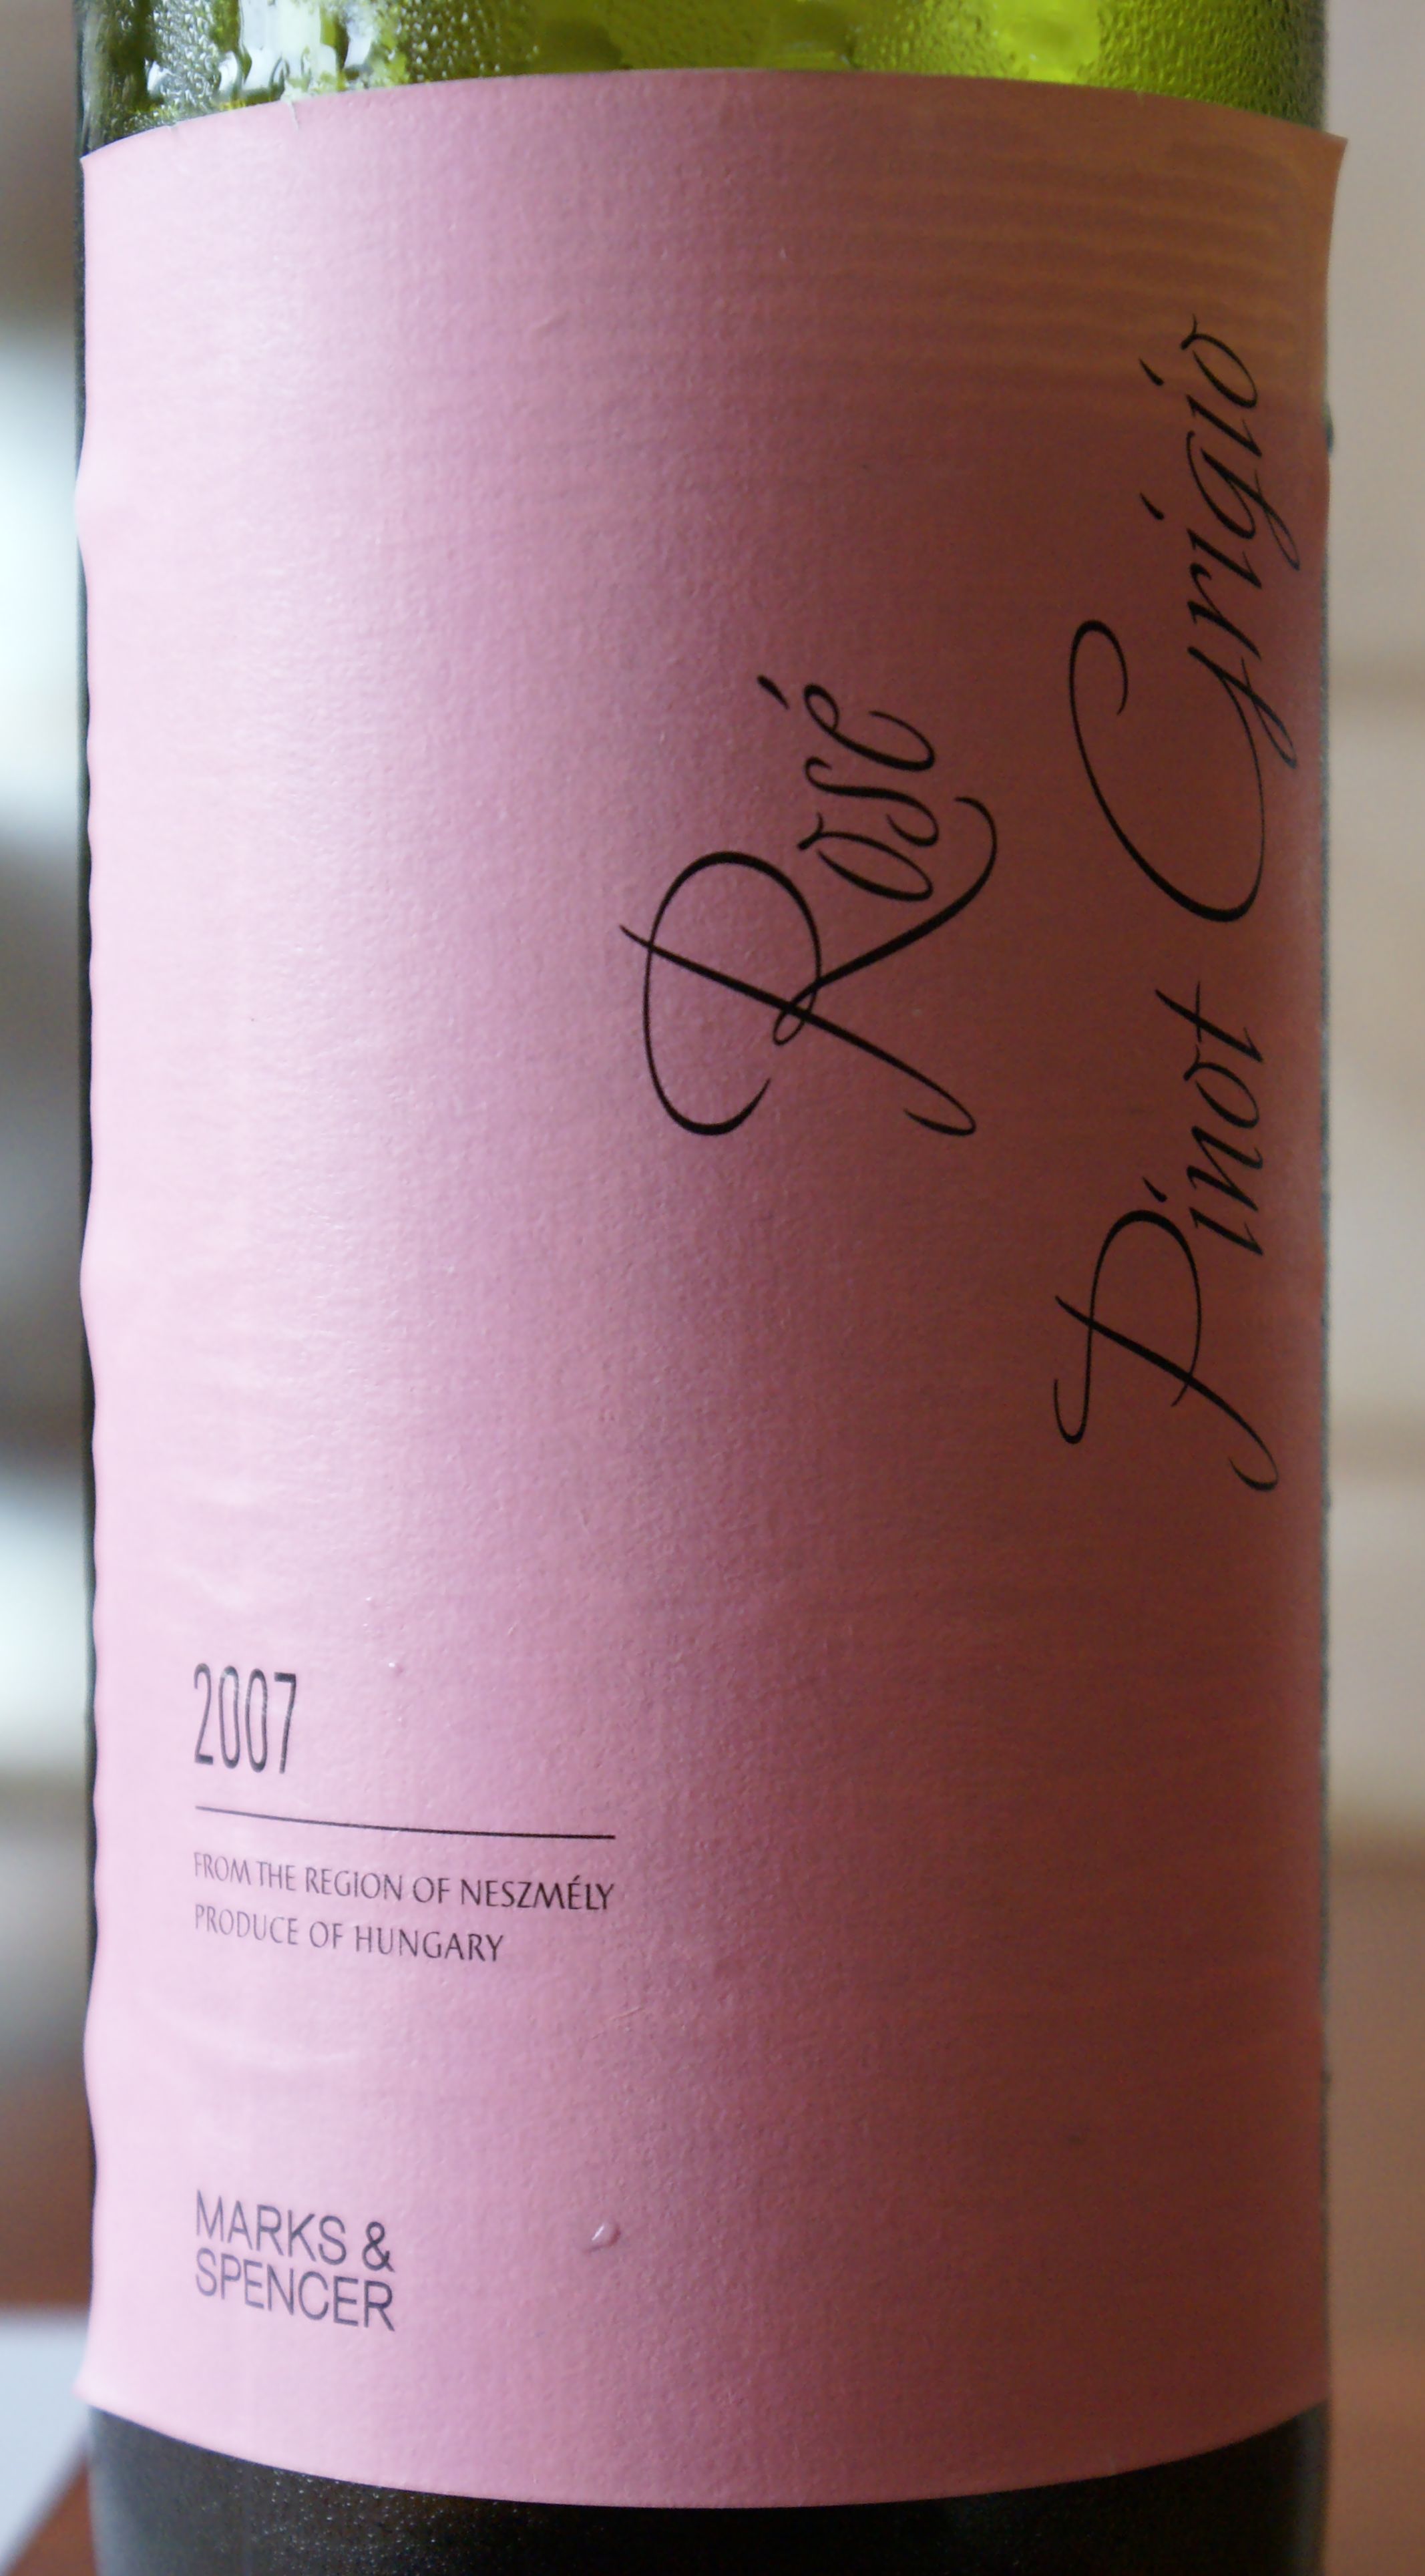 Marks & Spencer Pinot Grigio Rosé 2007